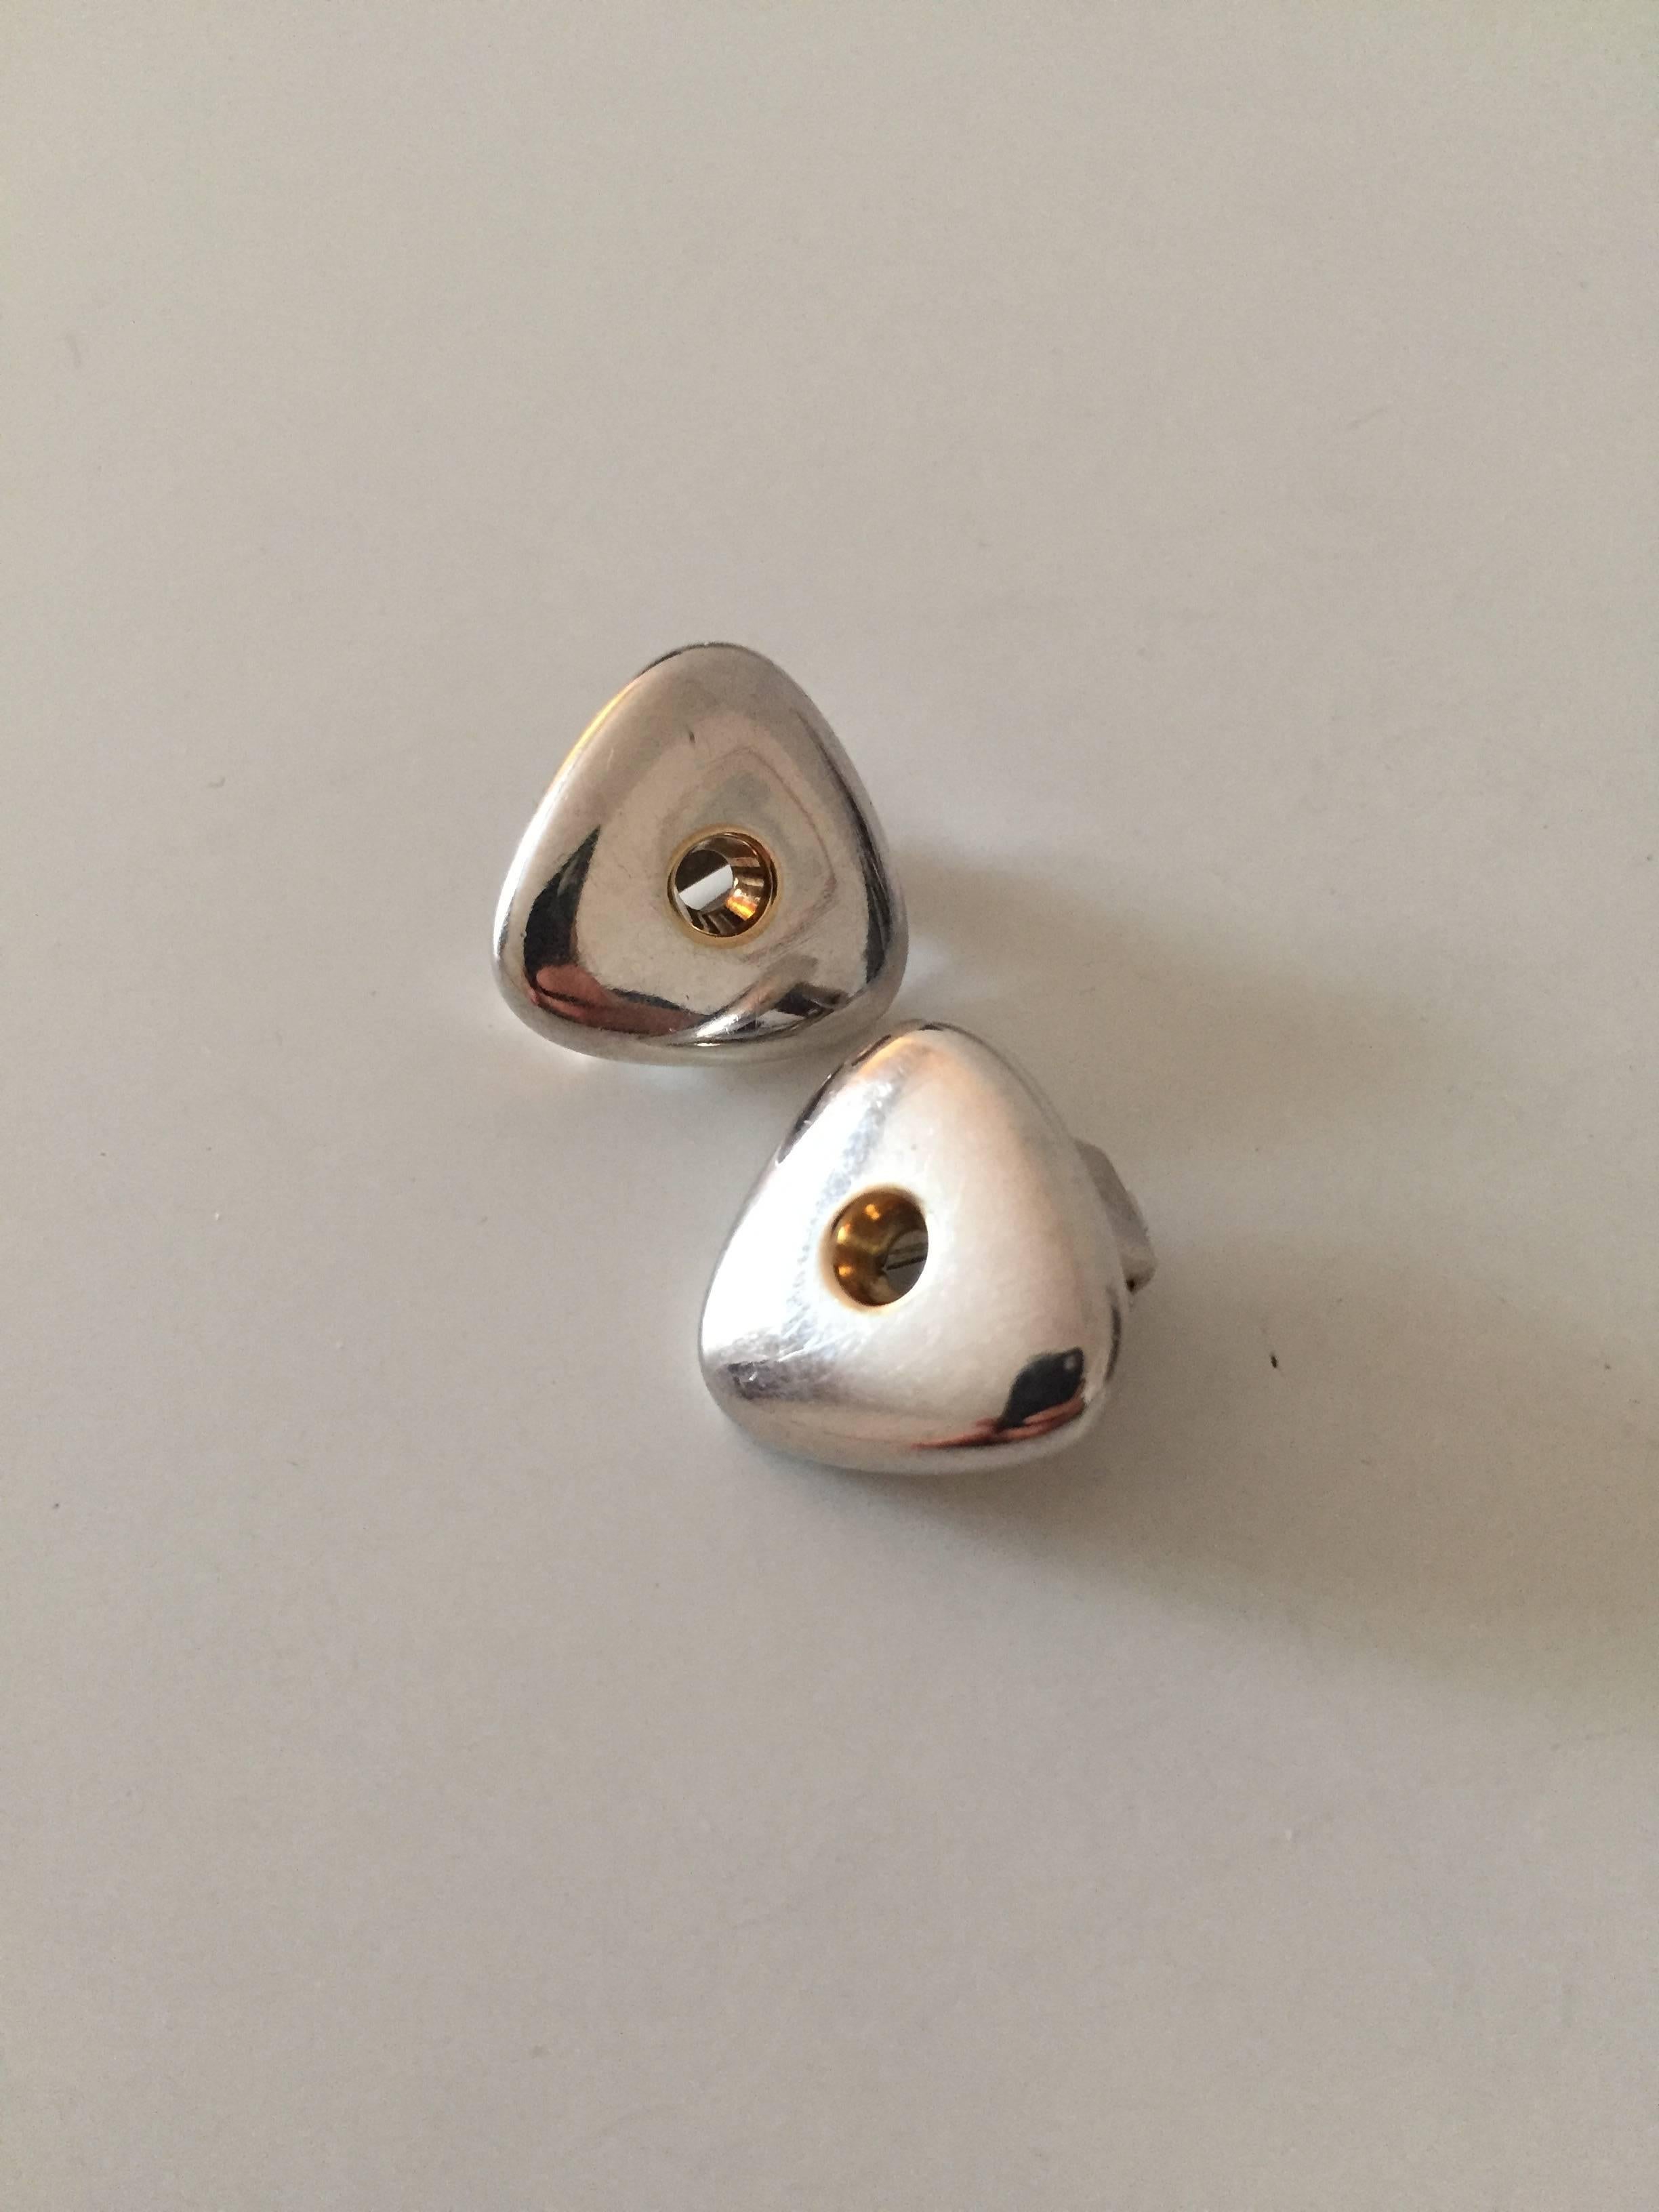 Georg Jensen sterling silver earclips #395. 

Measures 1.8 cm / 7/10